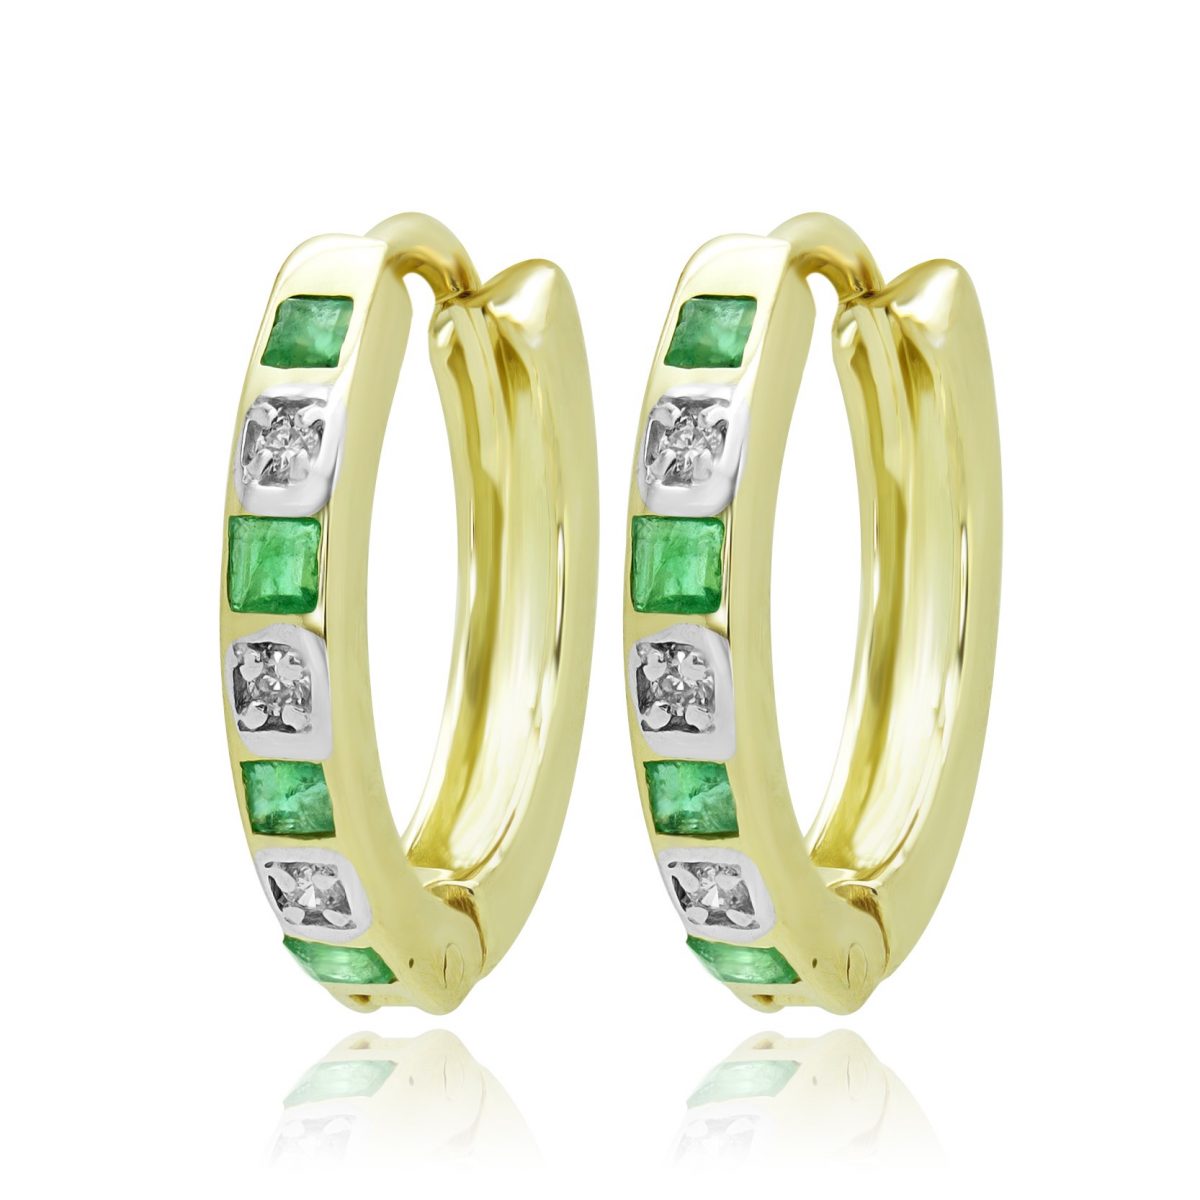 Diamond & emerald hoop earrings 0.06 (ctw) in 14k yellow gold